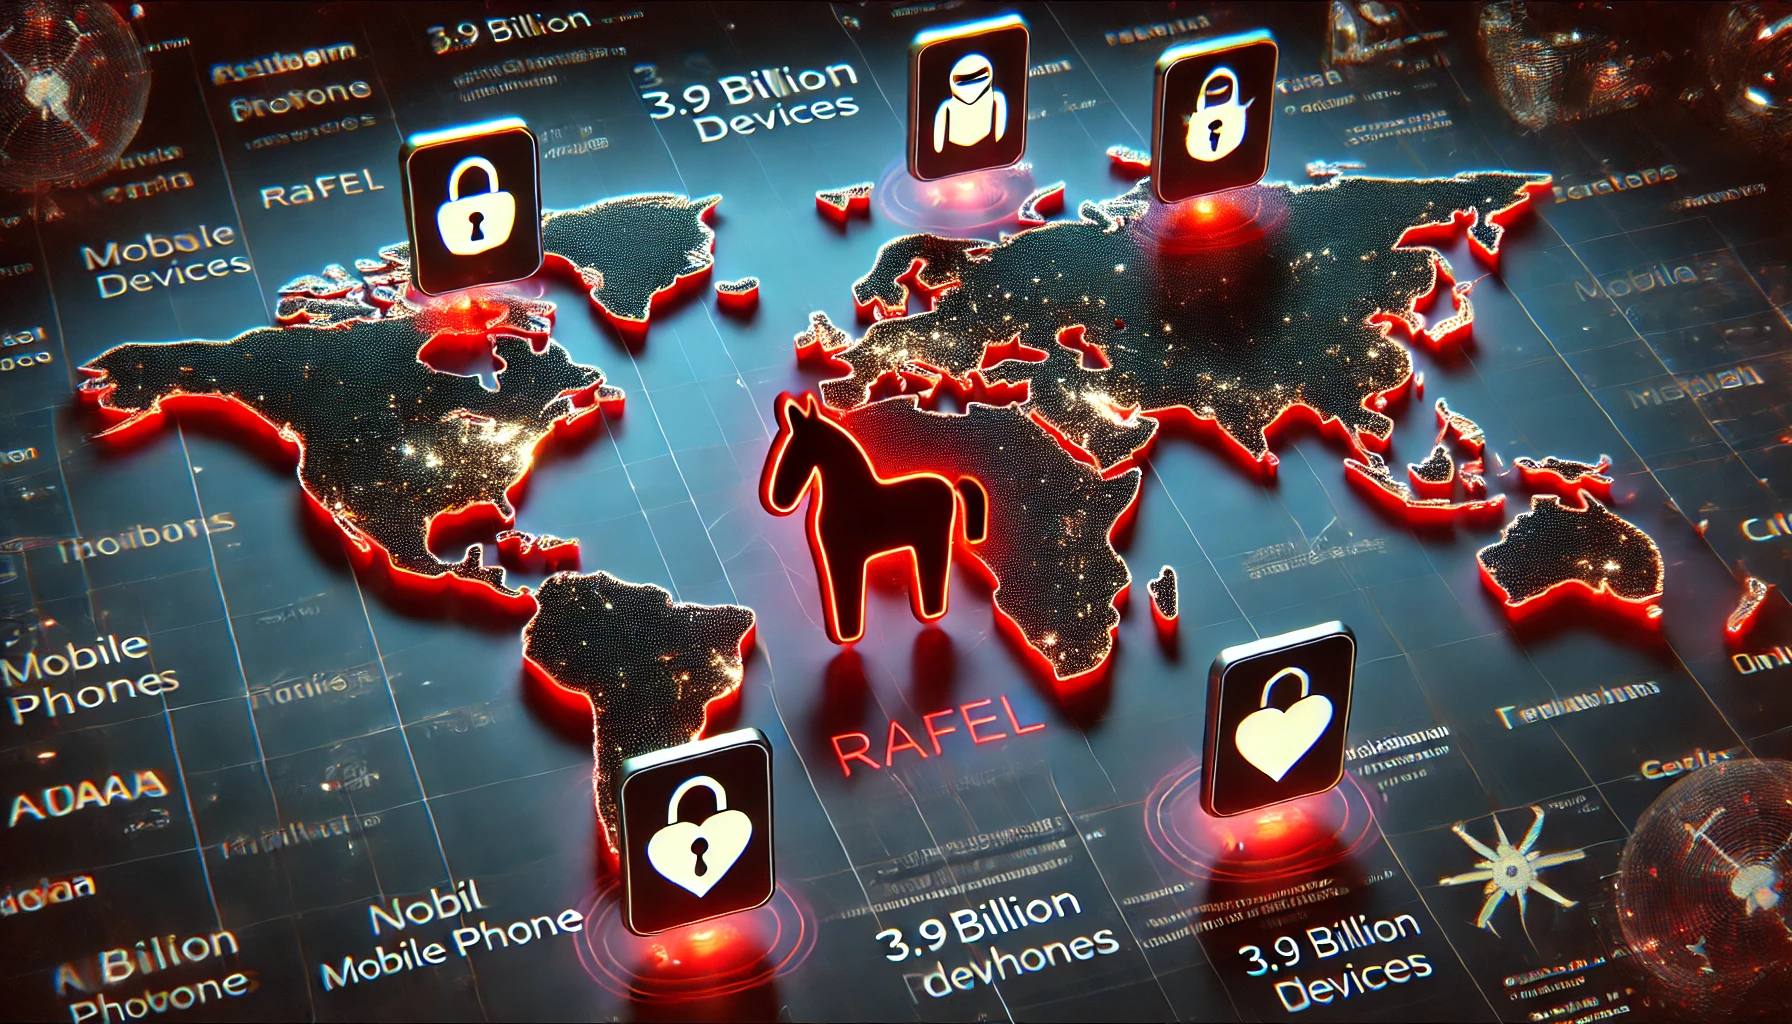 新型手機木馬程式 Rafel 肆虐！威脅全球 39 億部裝置‧4 大國家 6 品牌高危！